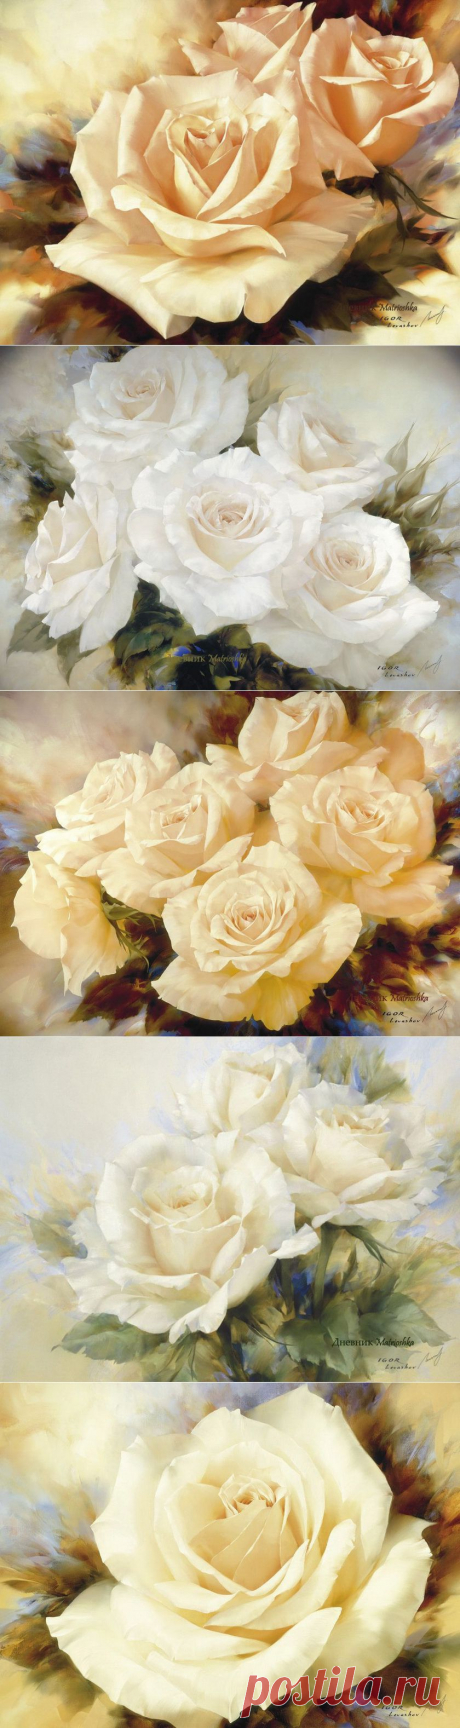 2 часть. Красивые картины с розами. | Творческая мастерская Марины Трублиной